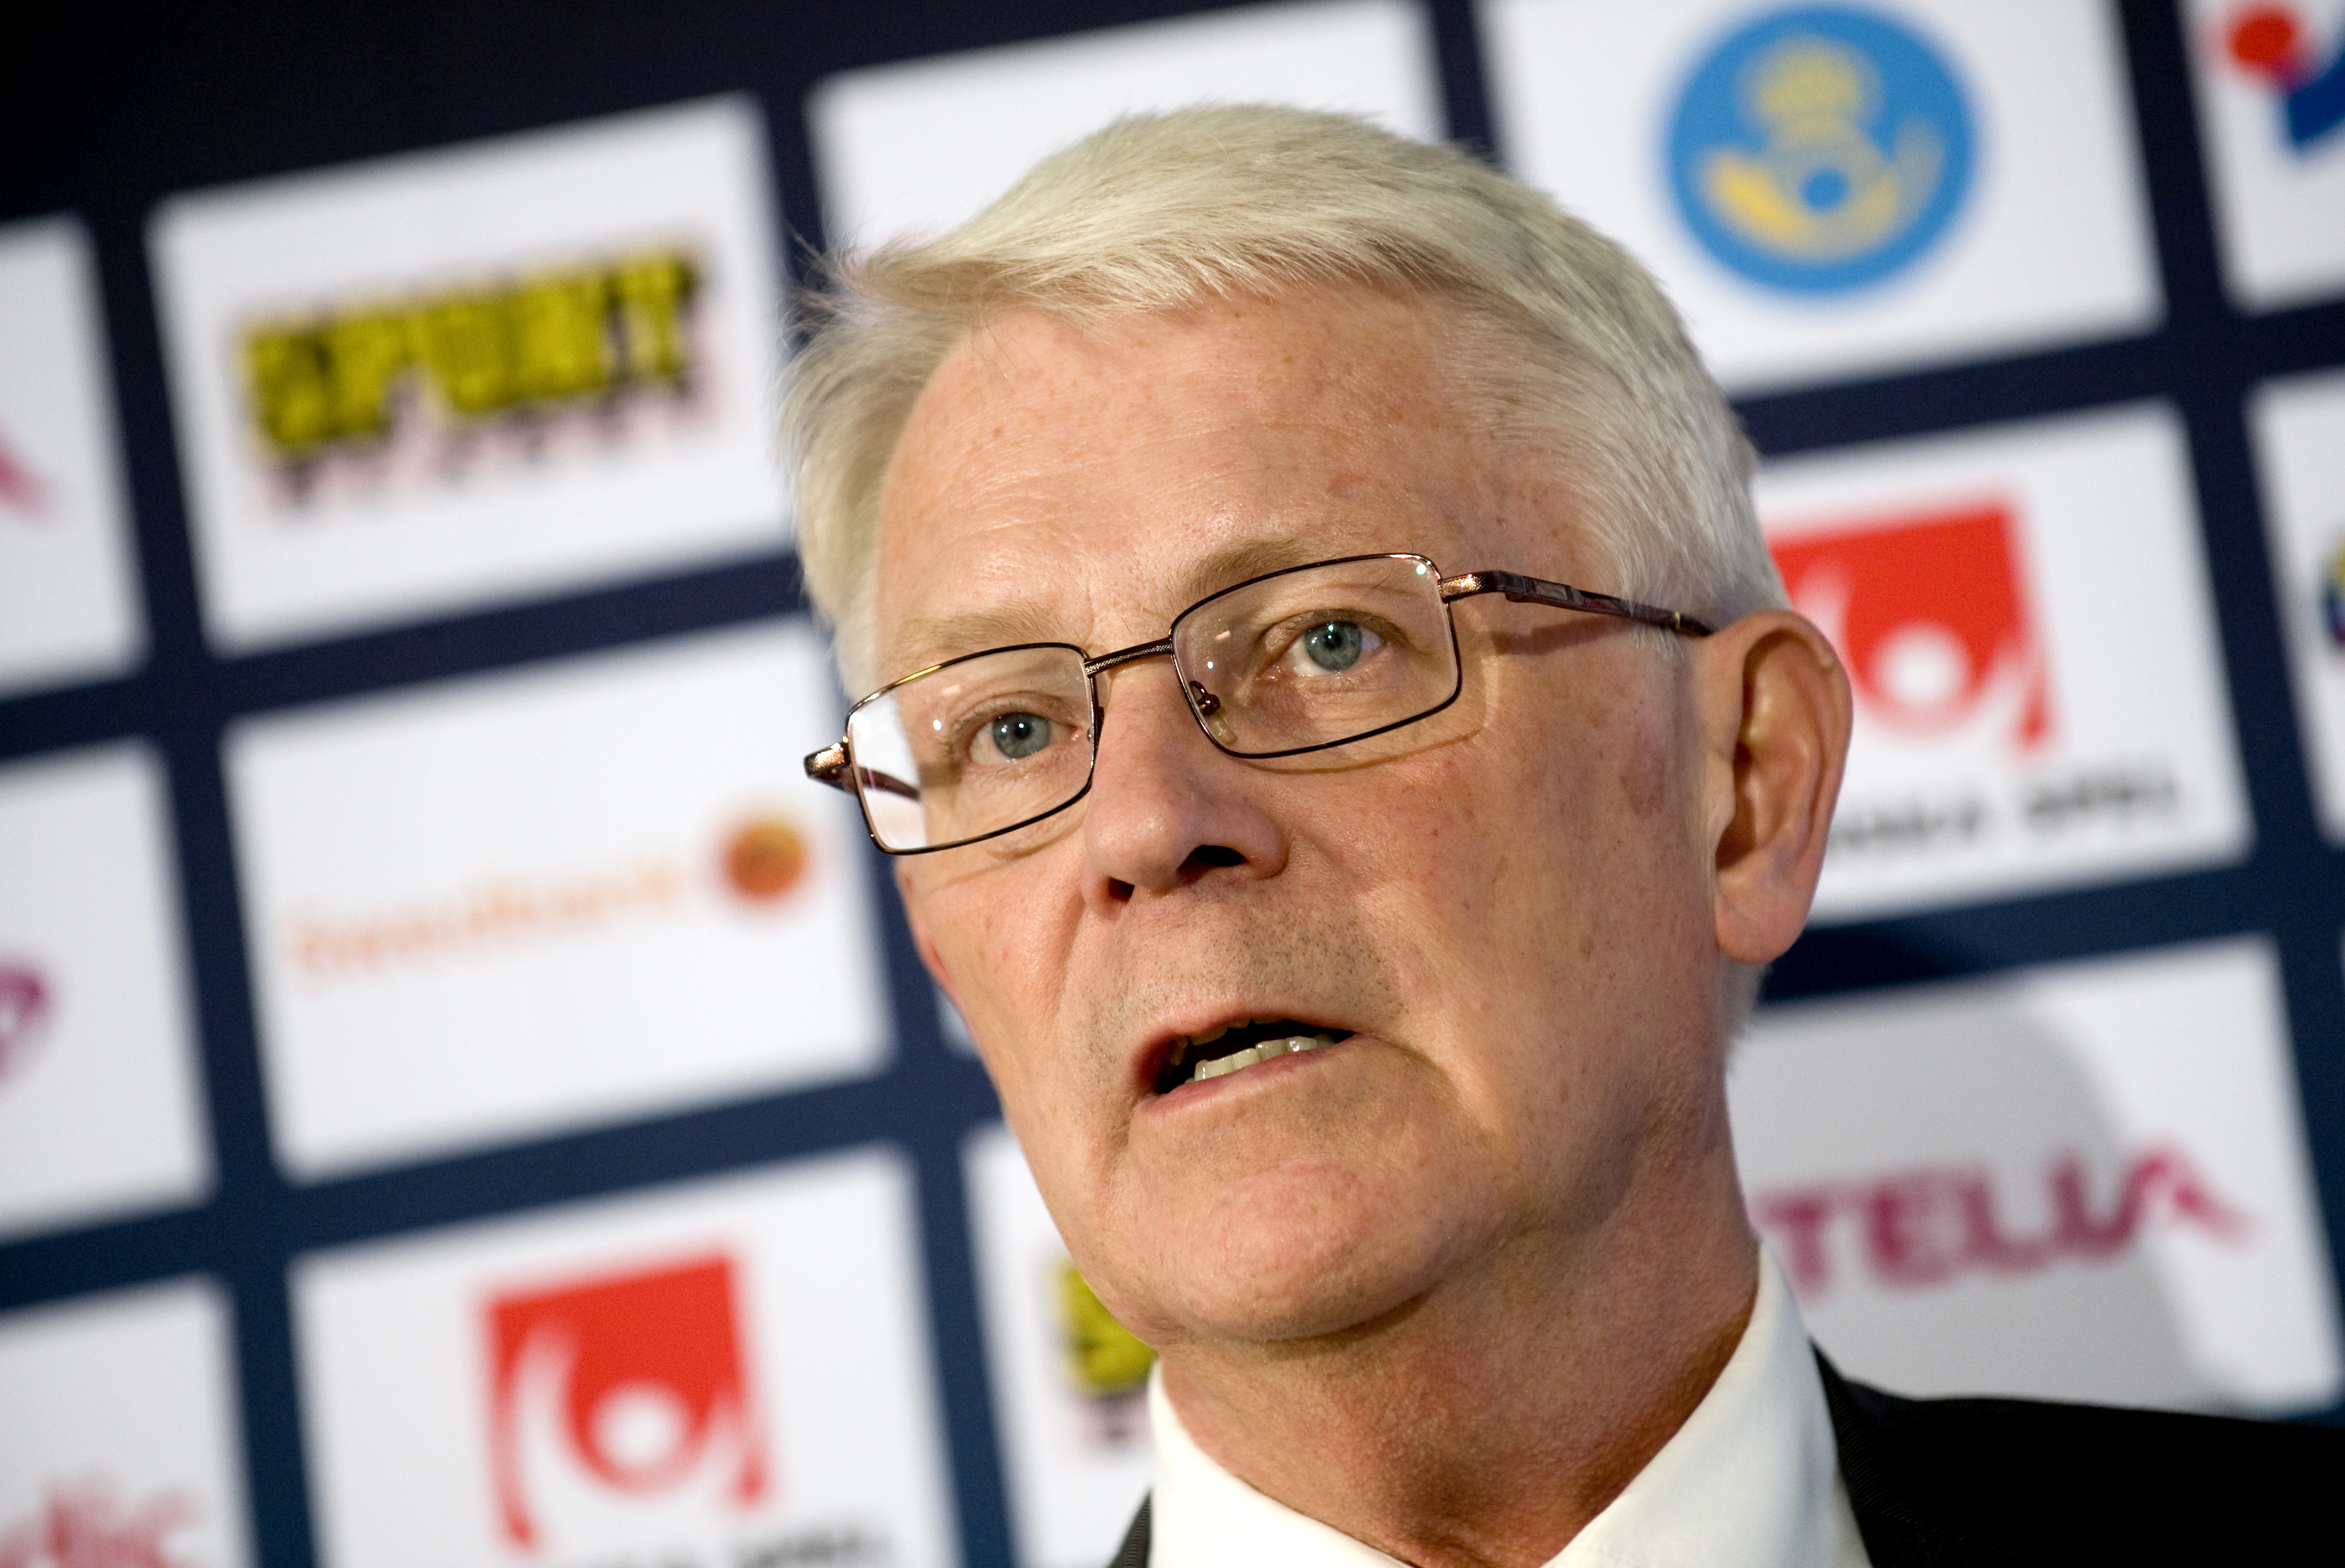 Förbundets senior advisor i arenafrågan, Sune Hellström, ser inget negativt med ett eventuellt namnbyte.